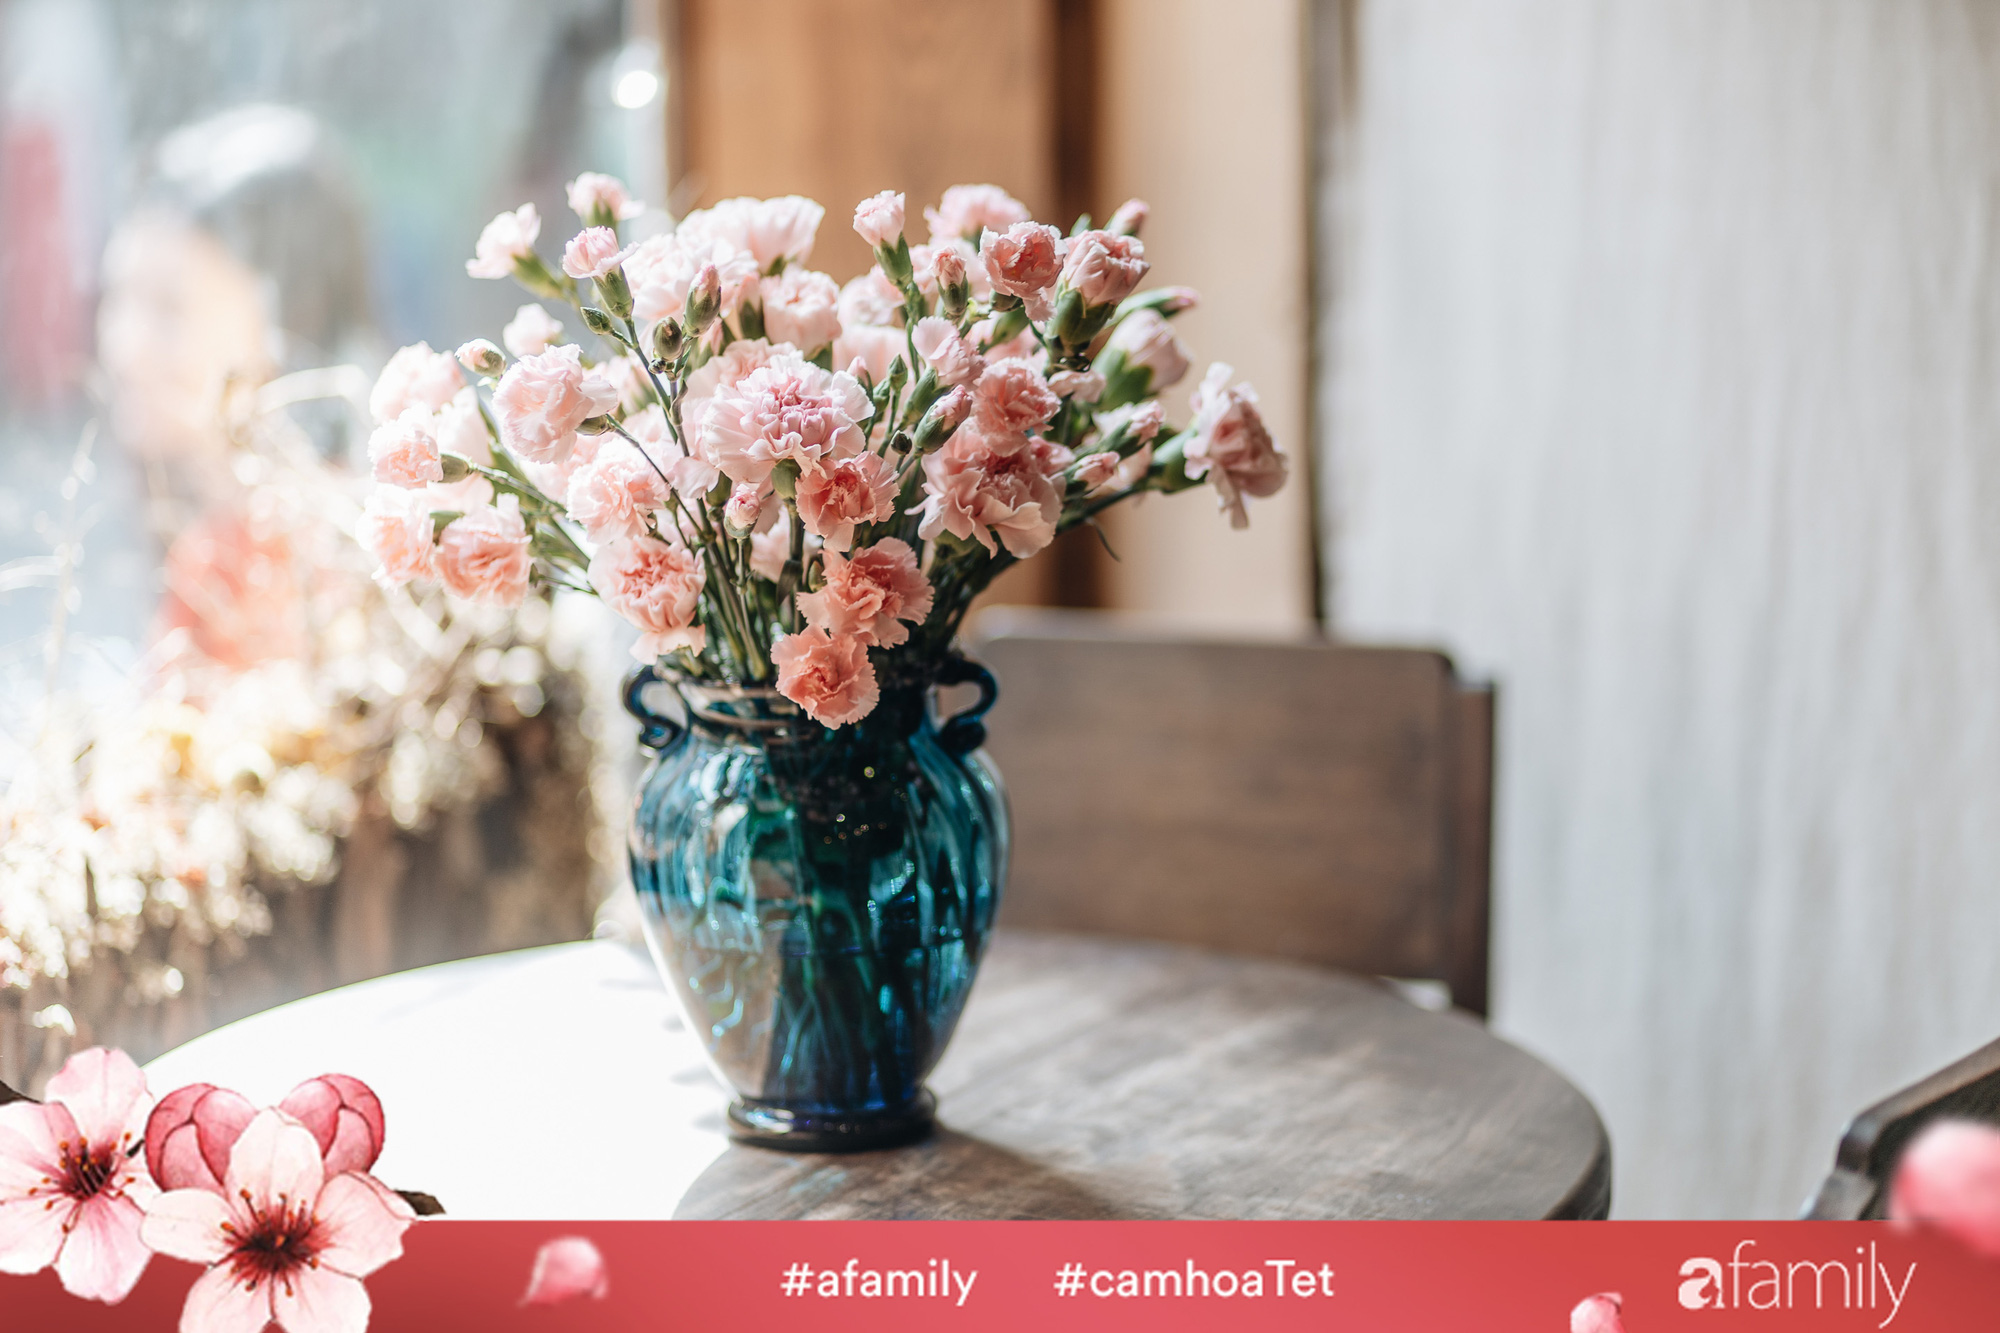 Hoa cẩm chướng chính là loại hoa không thể thiếu trong ngày Tết rực rỡ